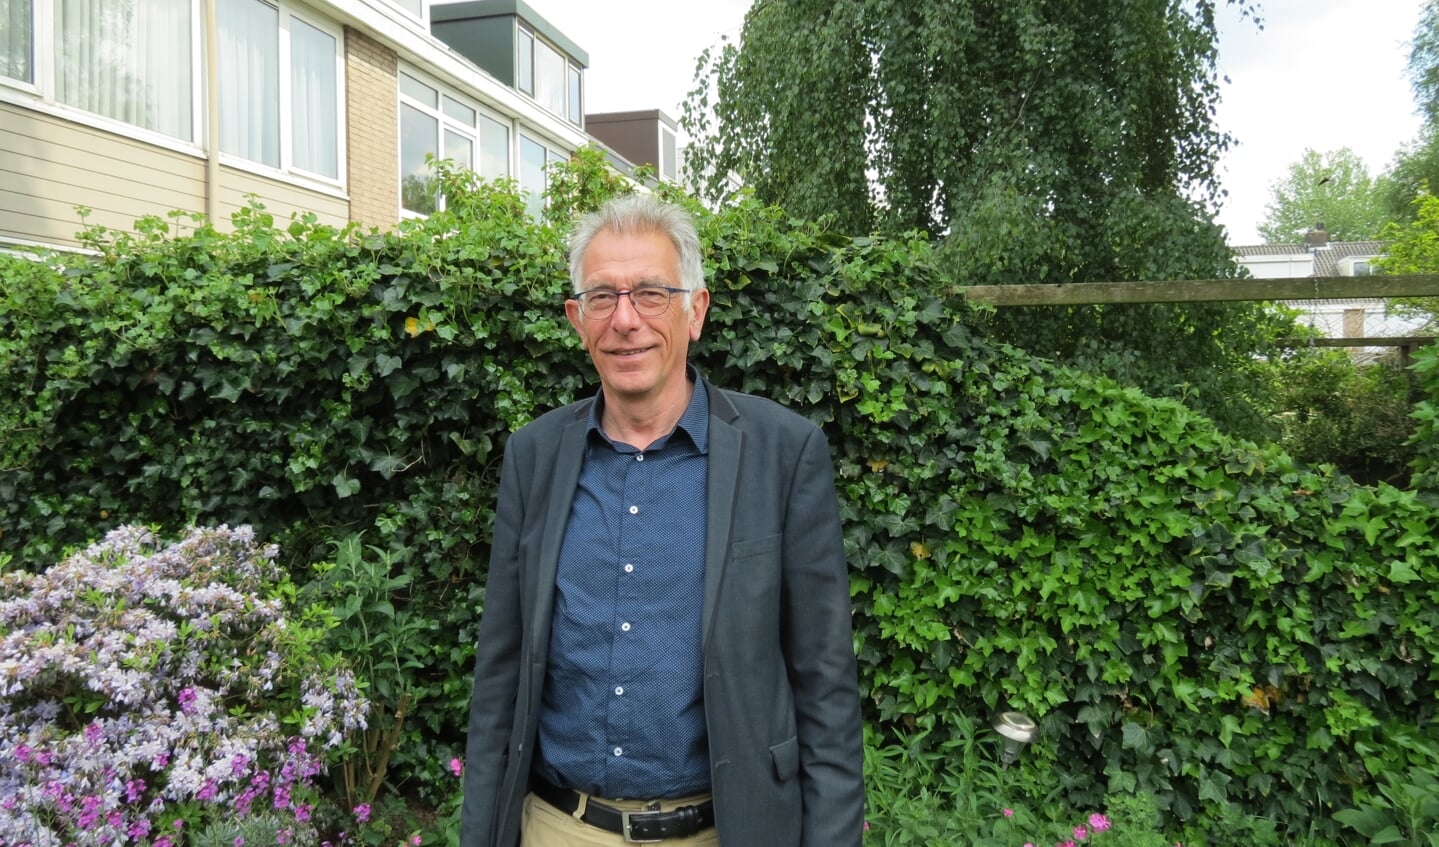 De vragen van Henk Zandvliet (GroenLinks) werden overruled door een later op de avond aangenomen motie die carbidschieten wil toestaan.